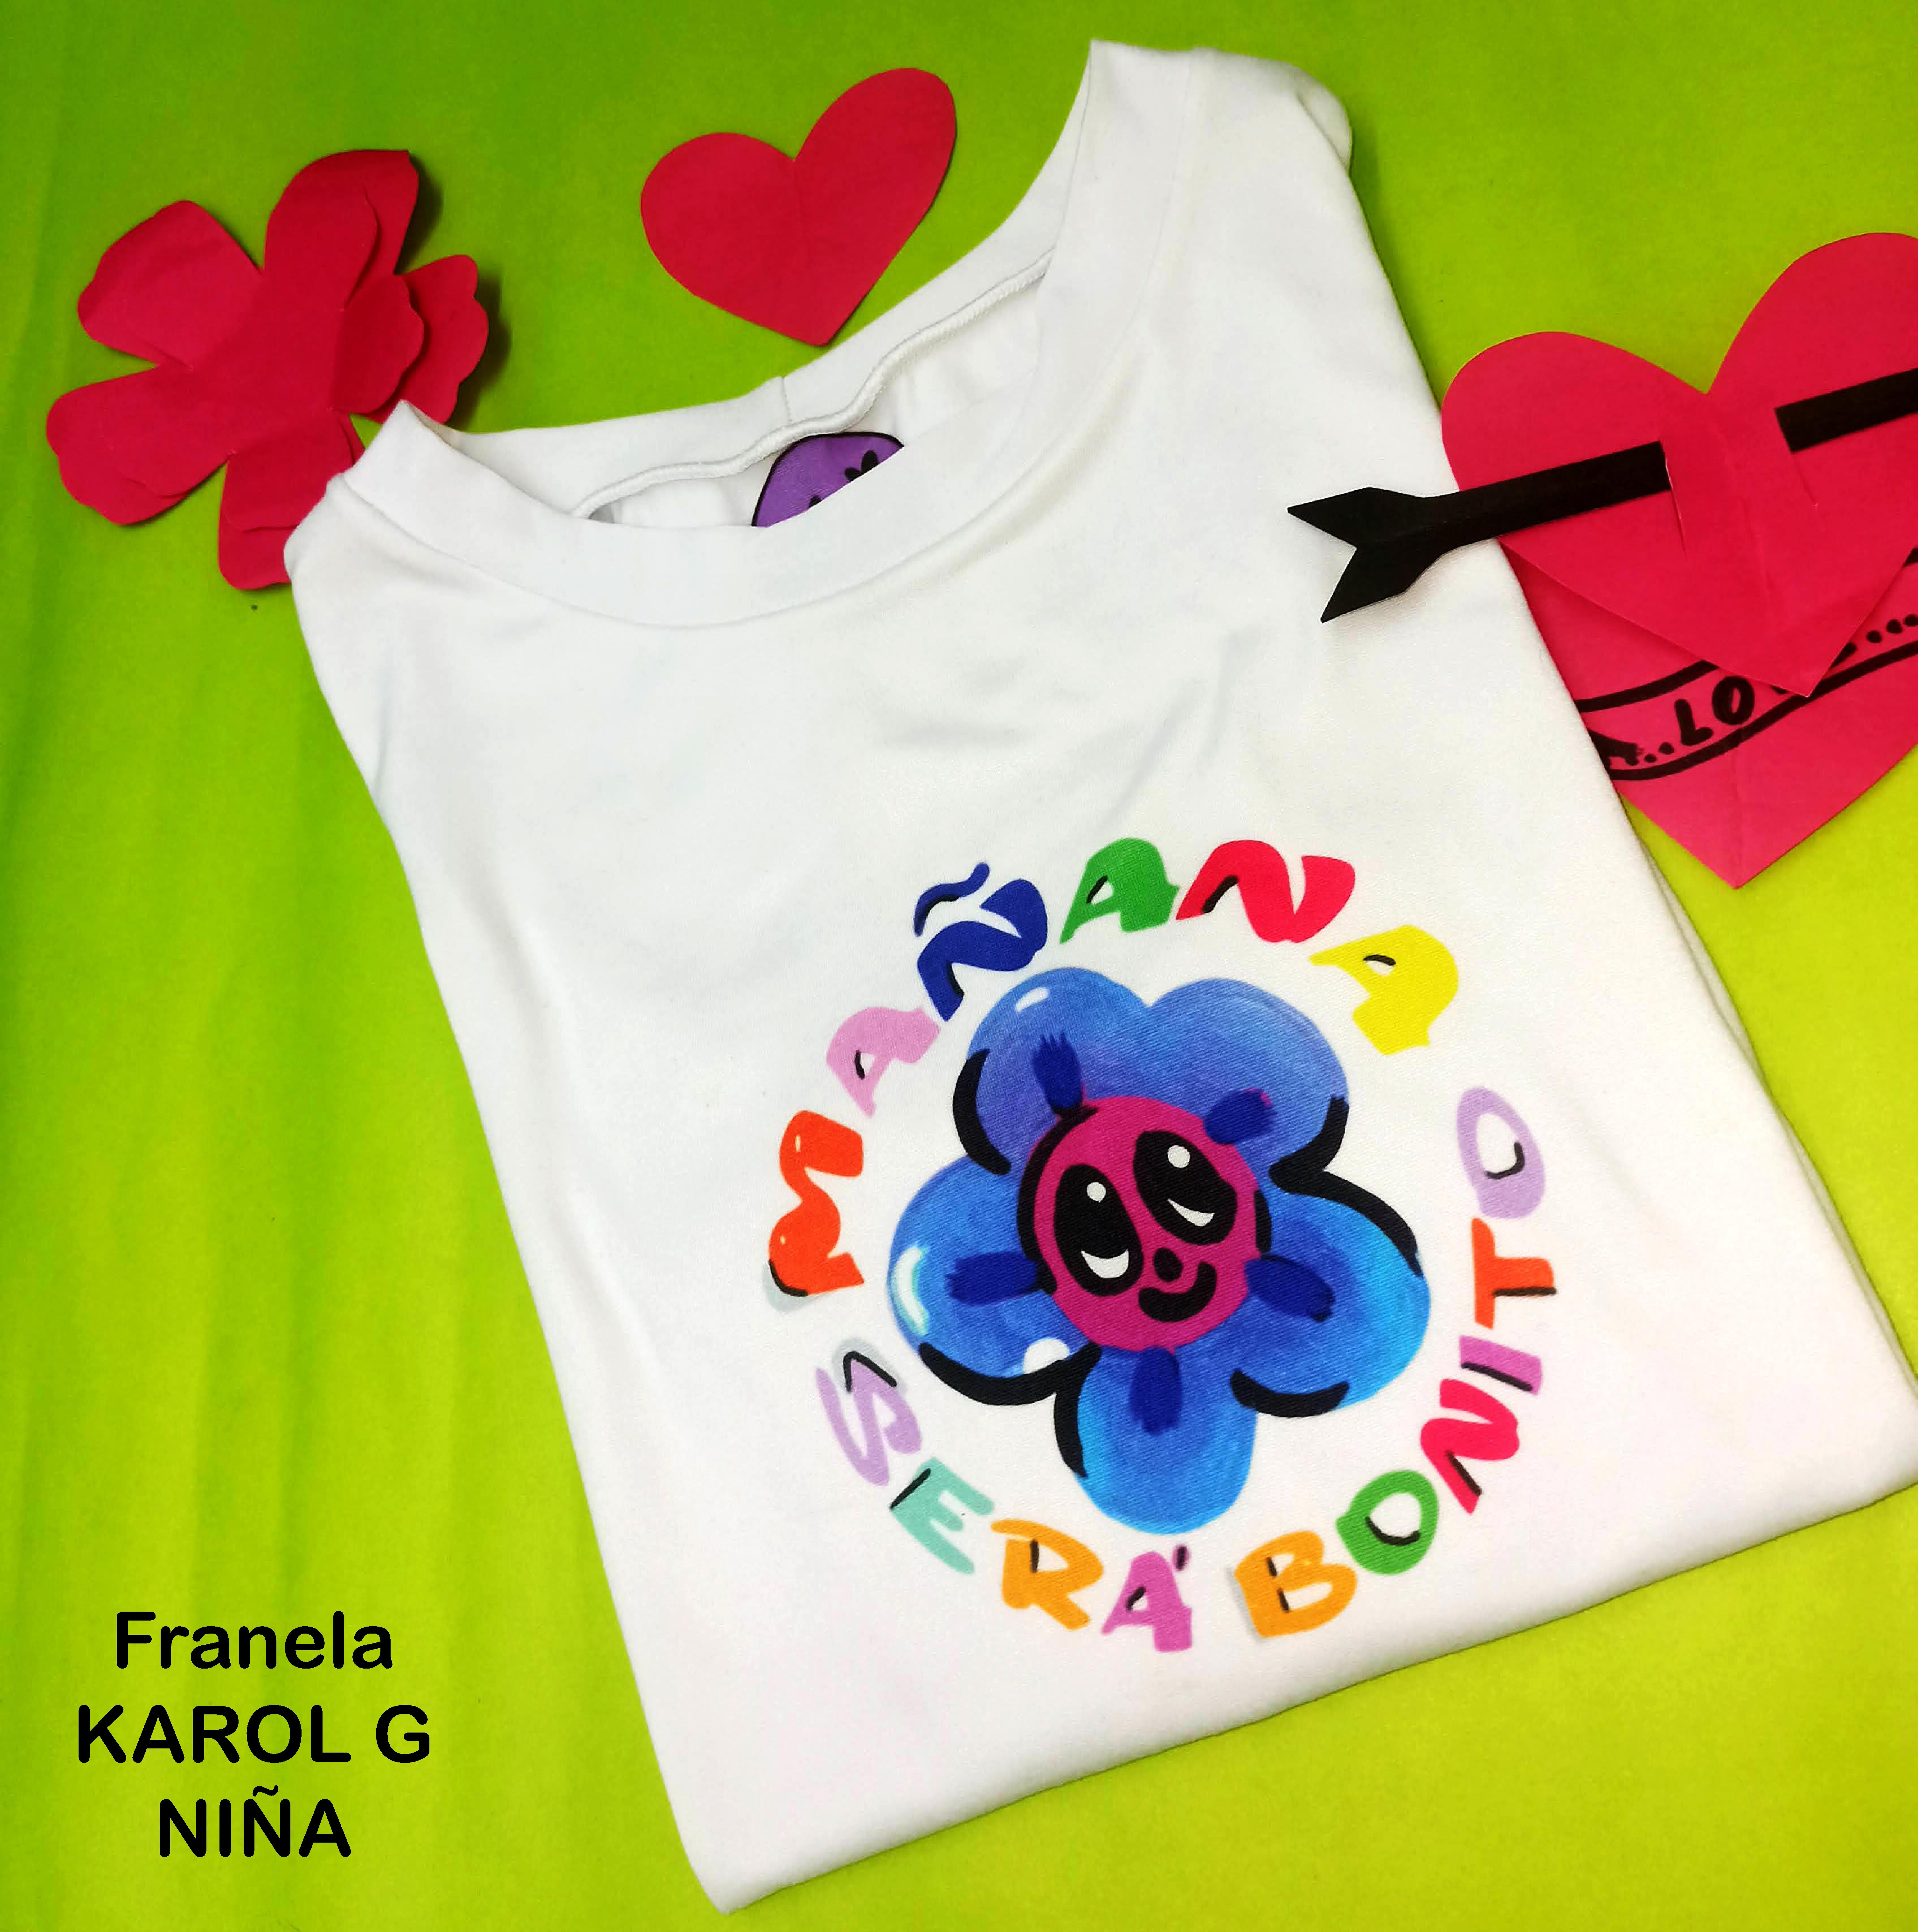 Camisetas De Karol G Para Niñas - Piel De Durazno